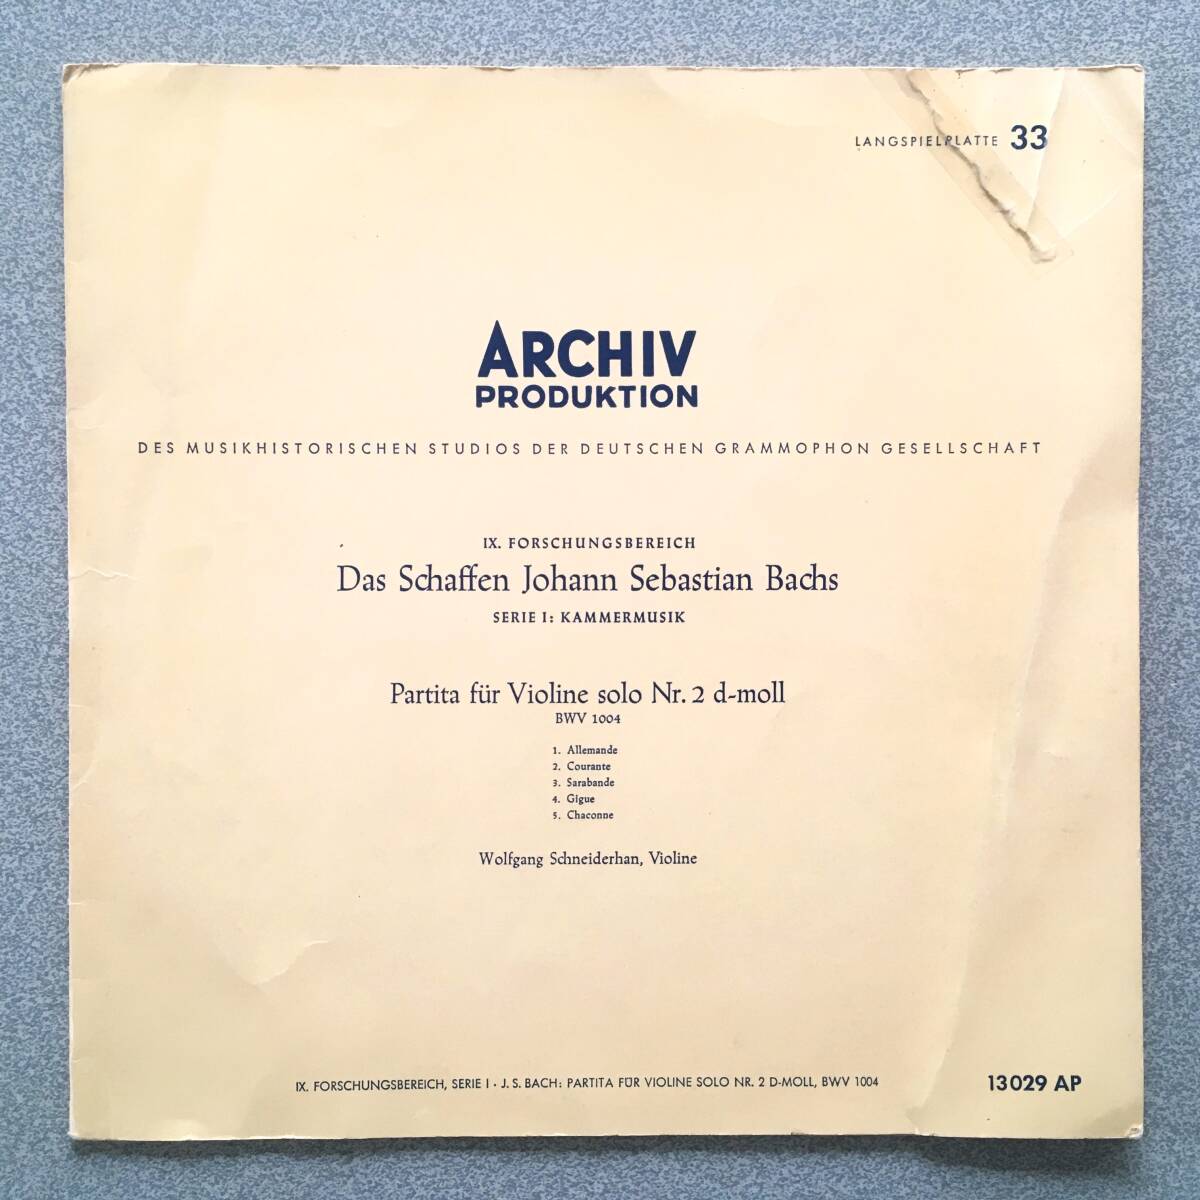 独ARCHIV 5/57 FLAT盤 シュナイダーハン 唯一のJ.S.Bach 無伴奏No.2 シャコンヌ! 凄まじい迫力の超名演 他にレコードなし ノイズ皆無_画像1